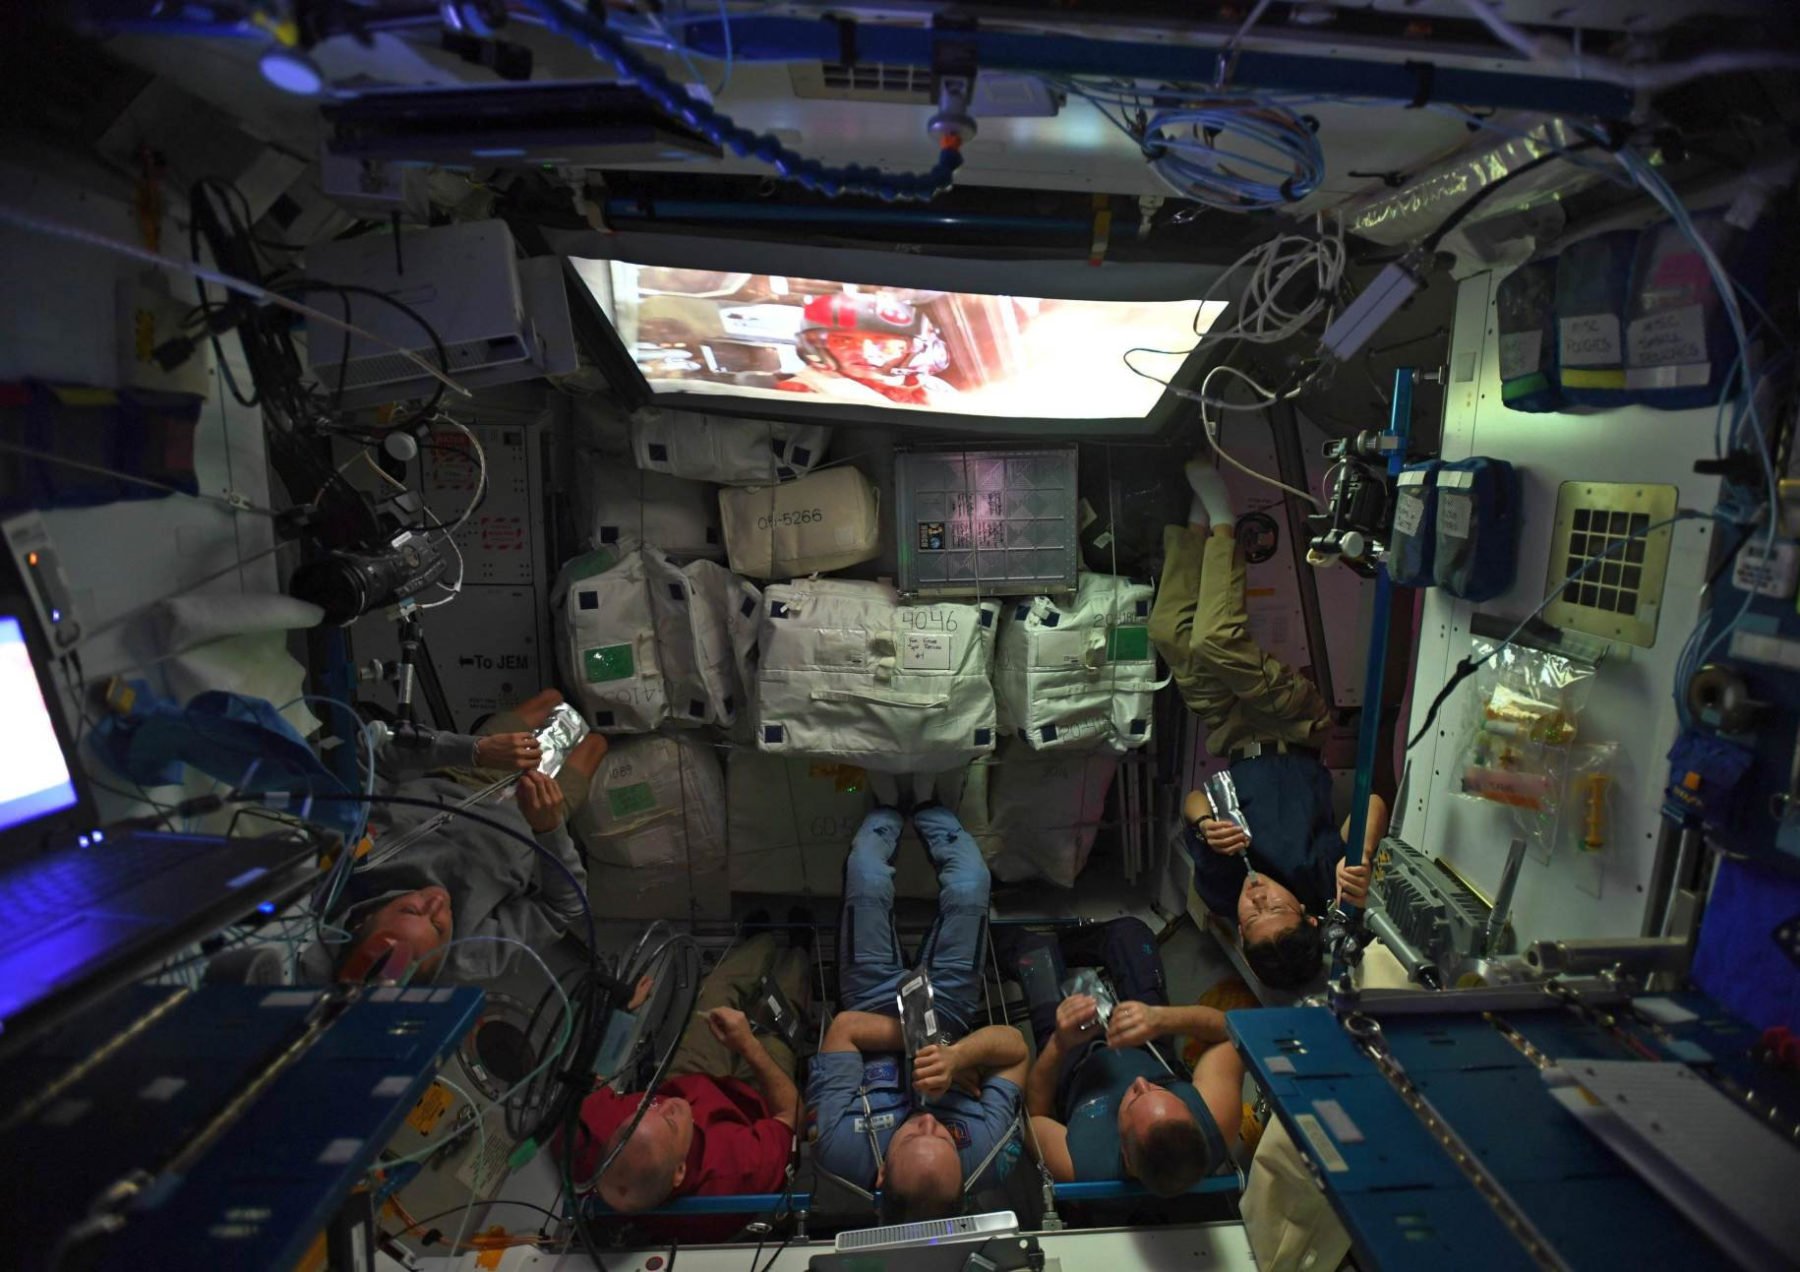 star wars aboard space station | L'image du jour : l'équipage de l'ISS regarde le dernier Star Wars